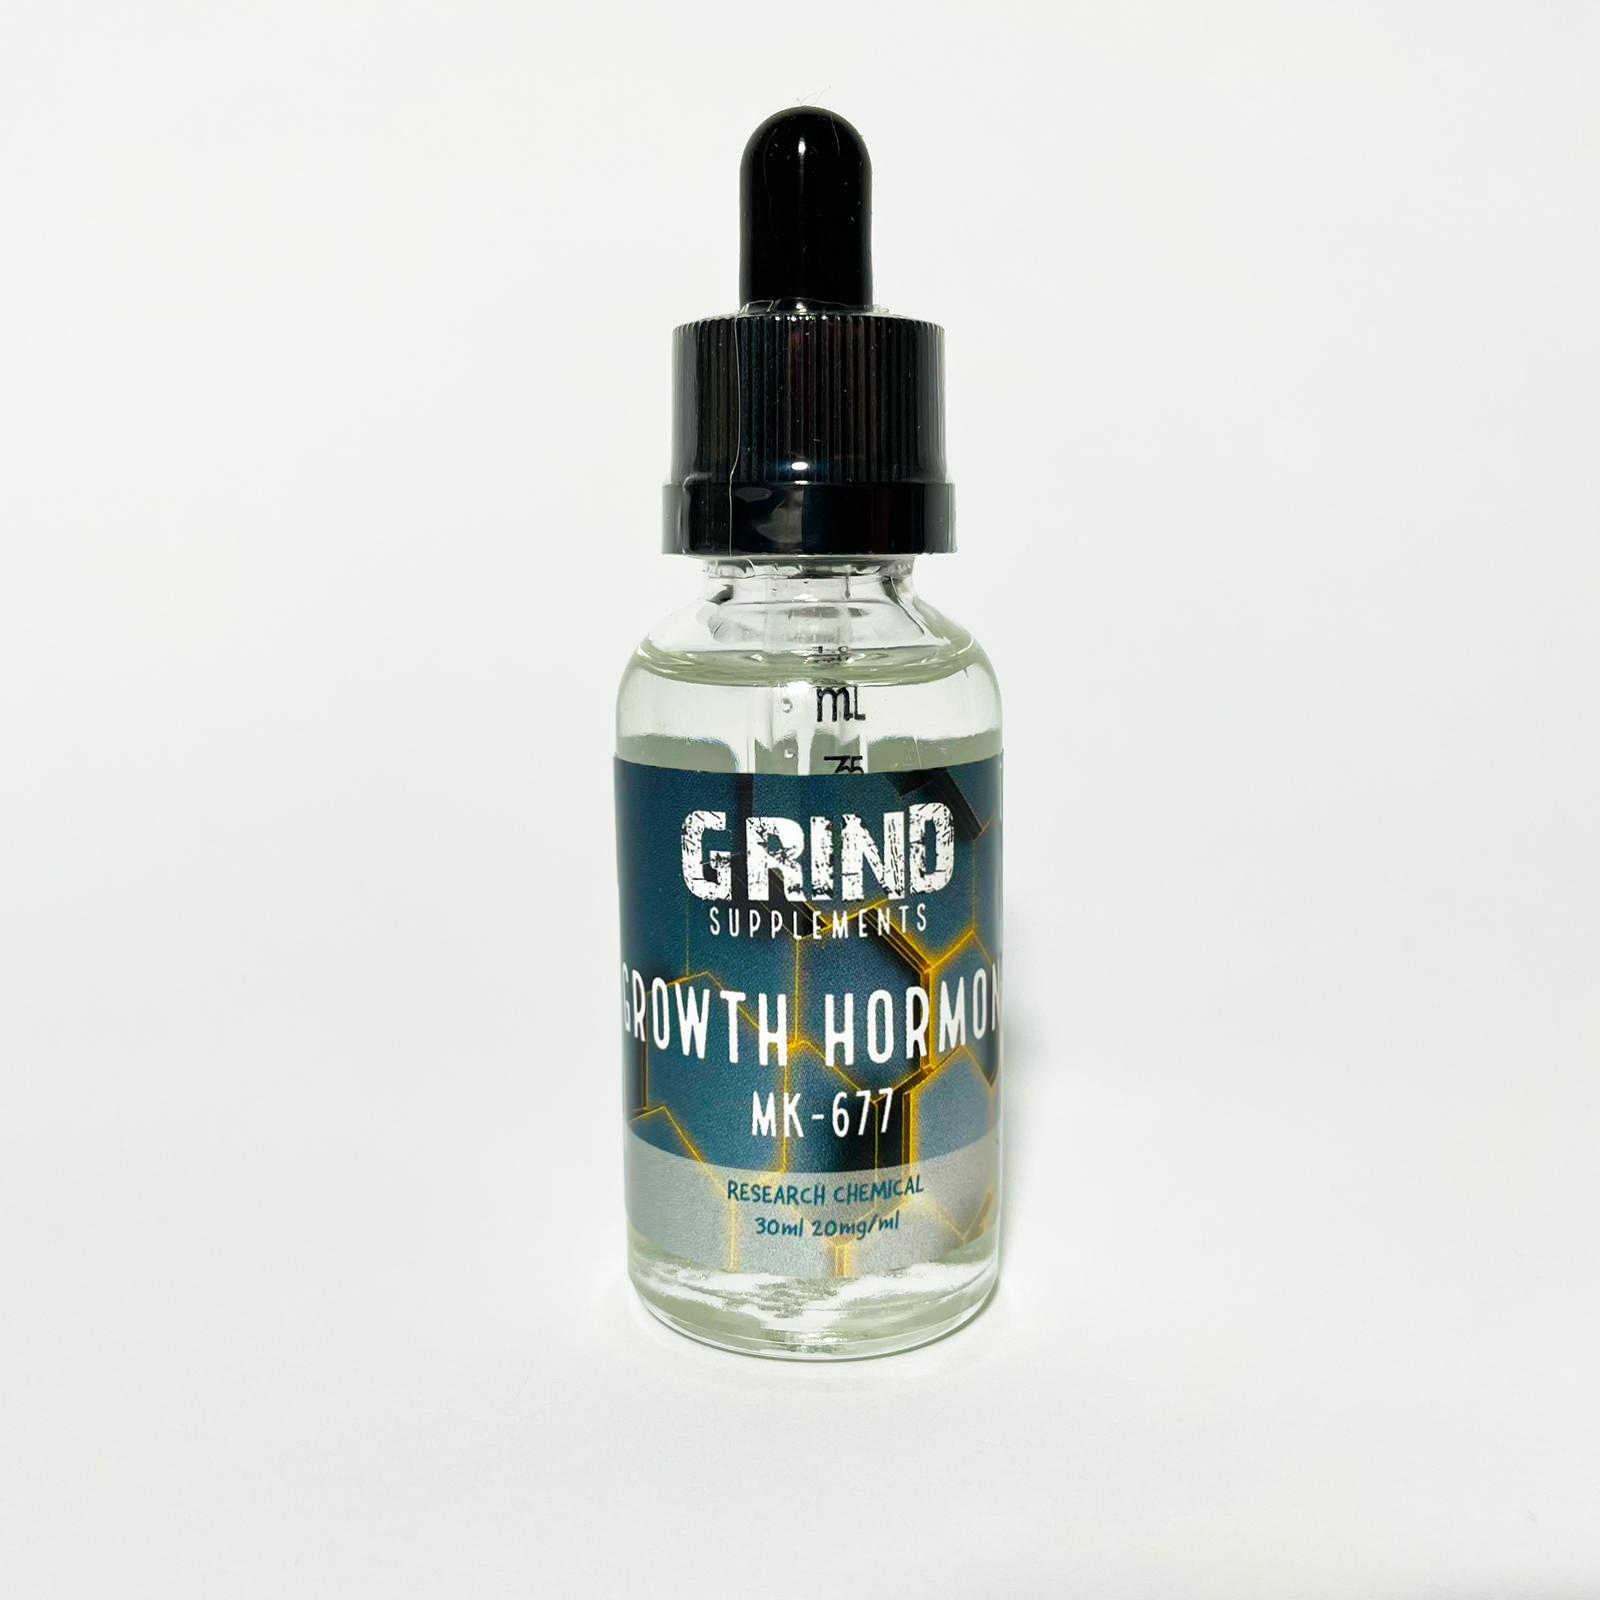 Grind - Growth Hormone MK-677